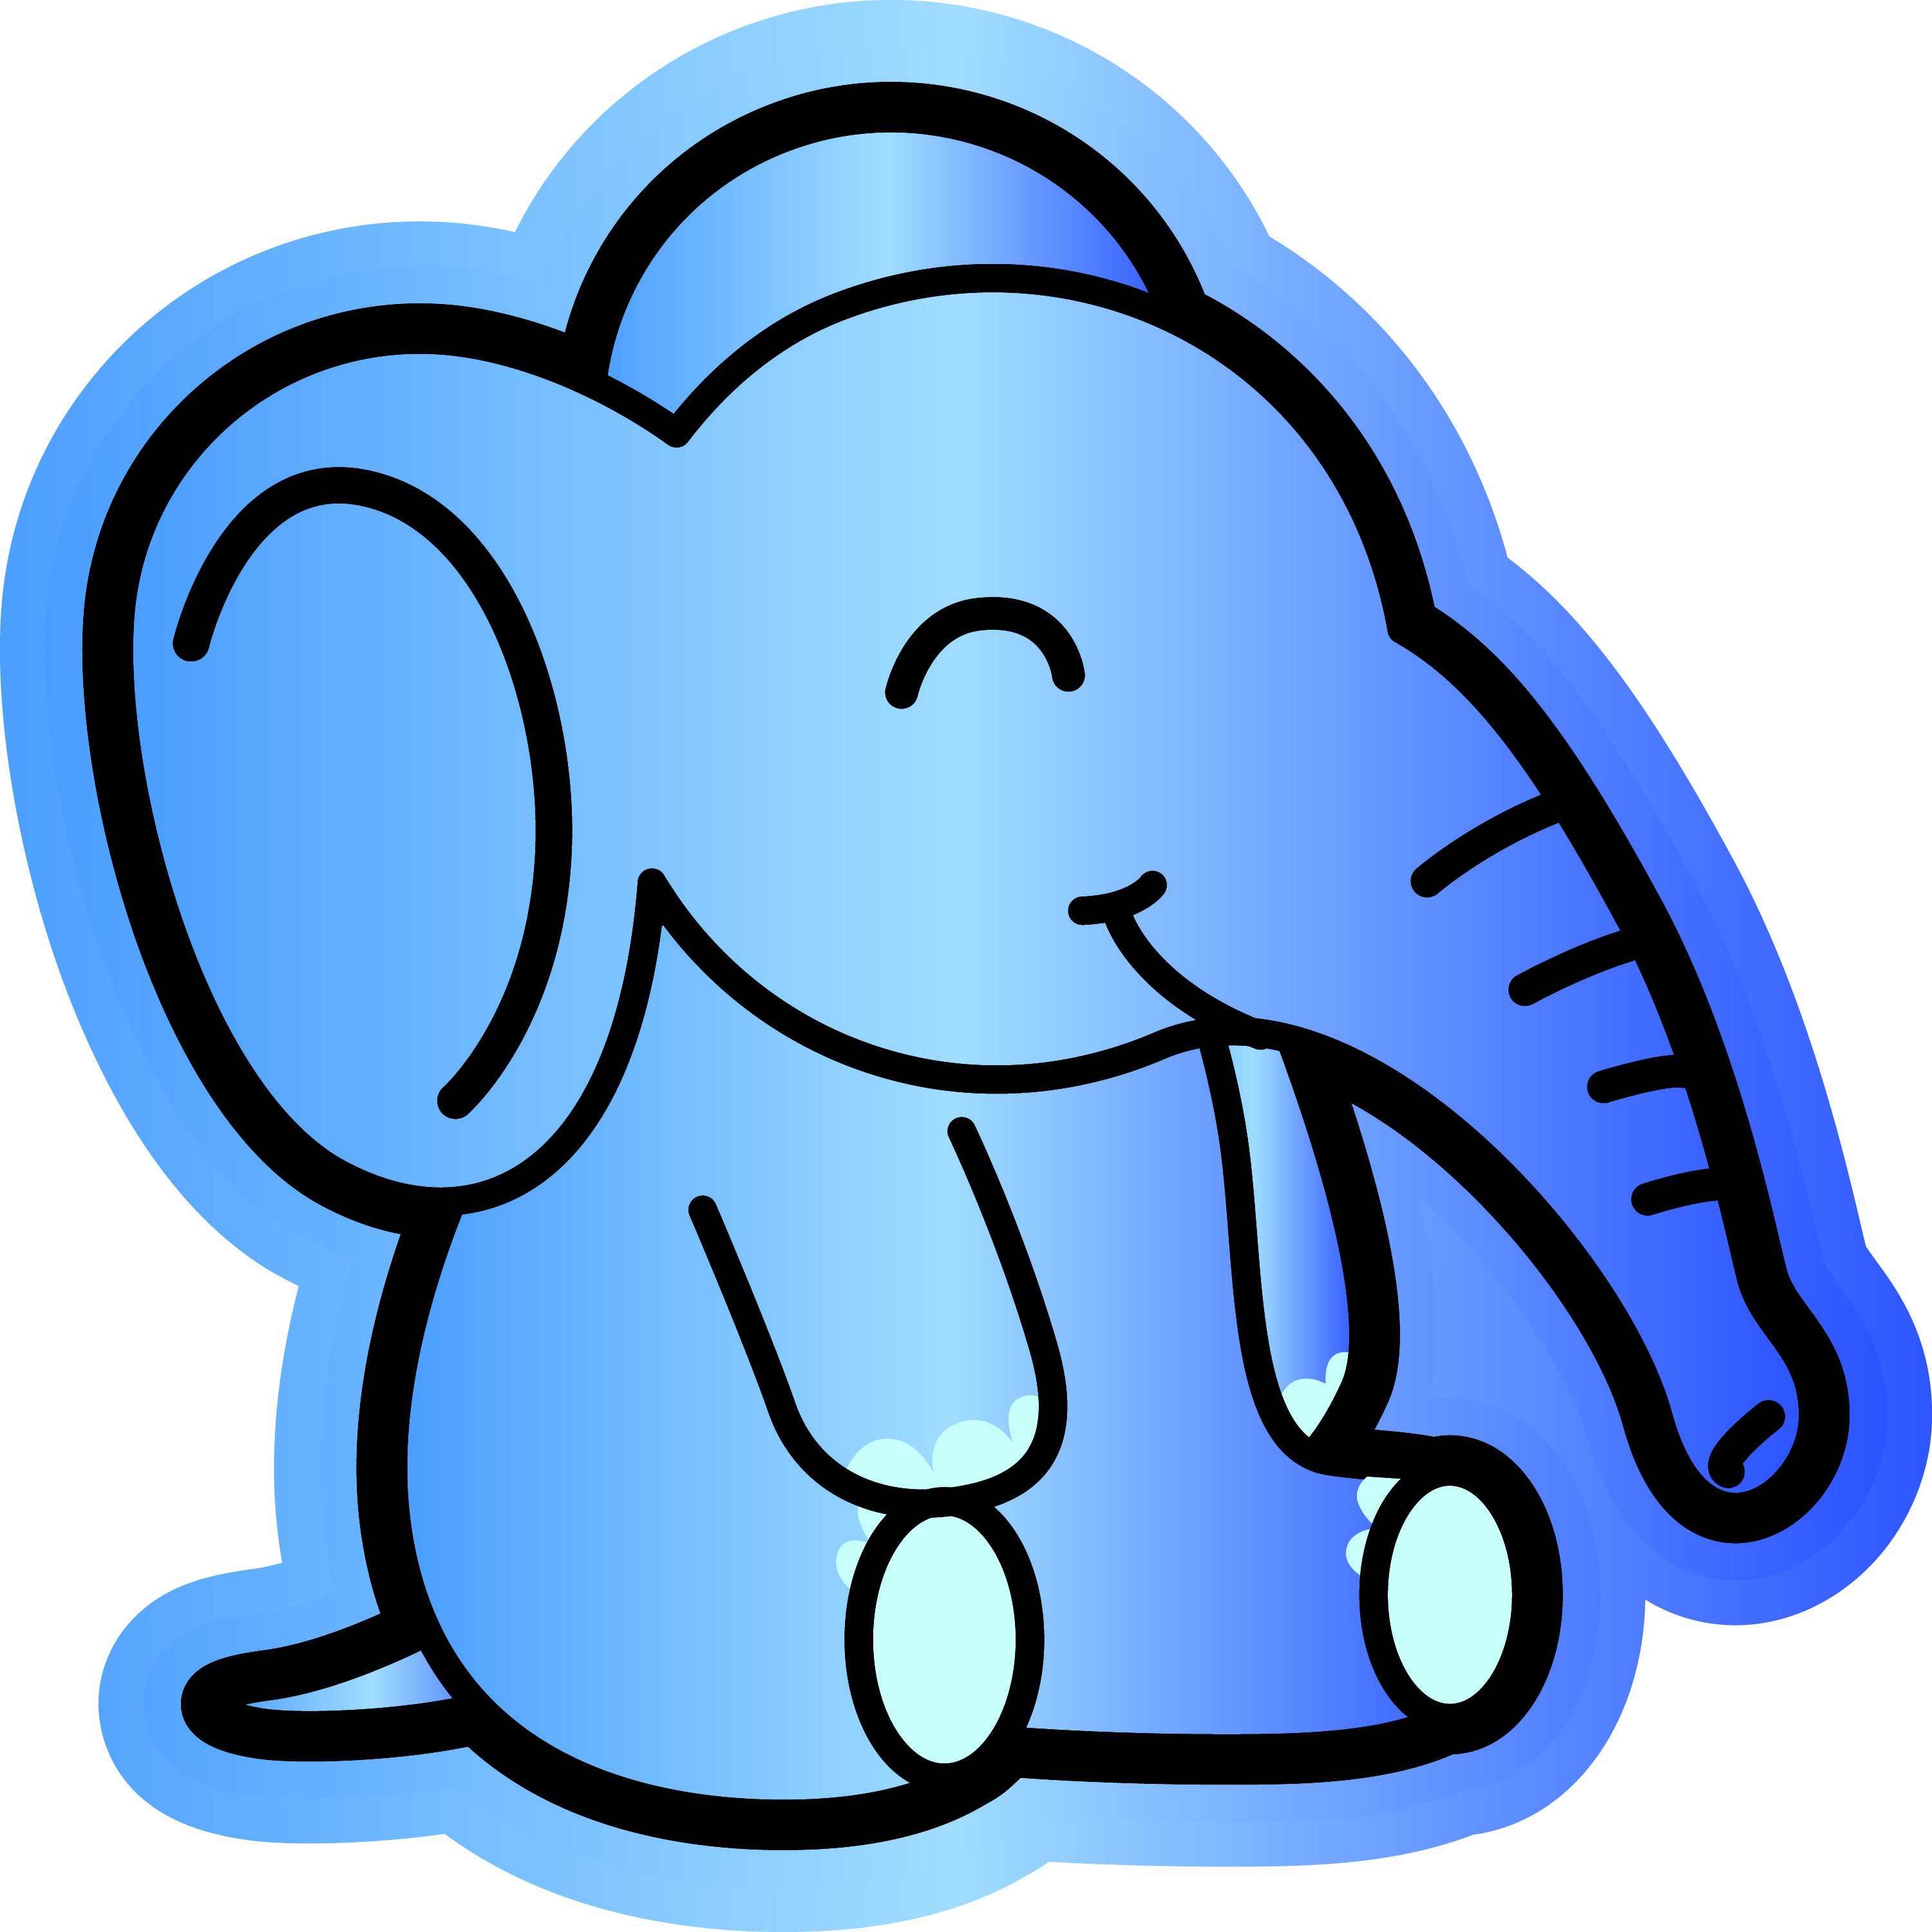 Tieraufkleber Elefant (3) Sticker Wandtattoo 23cm